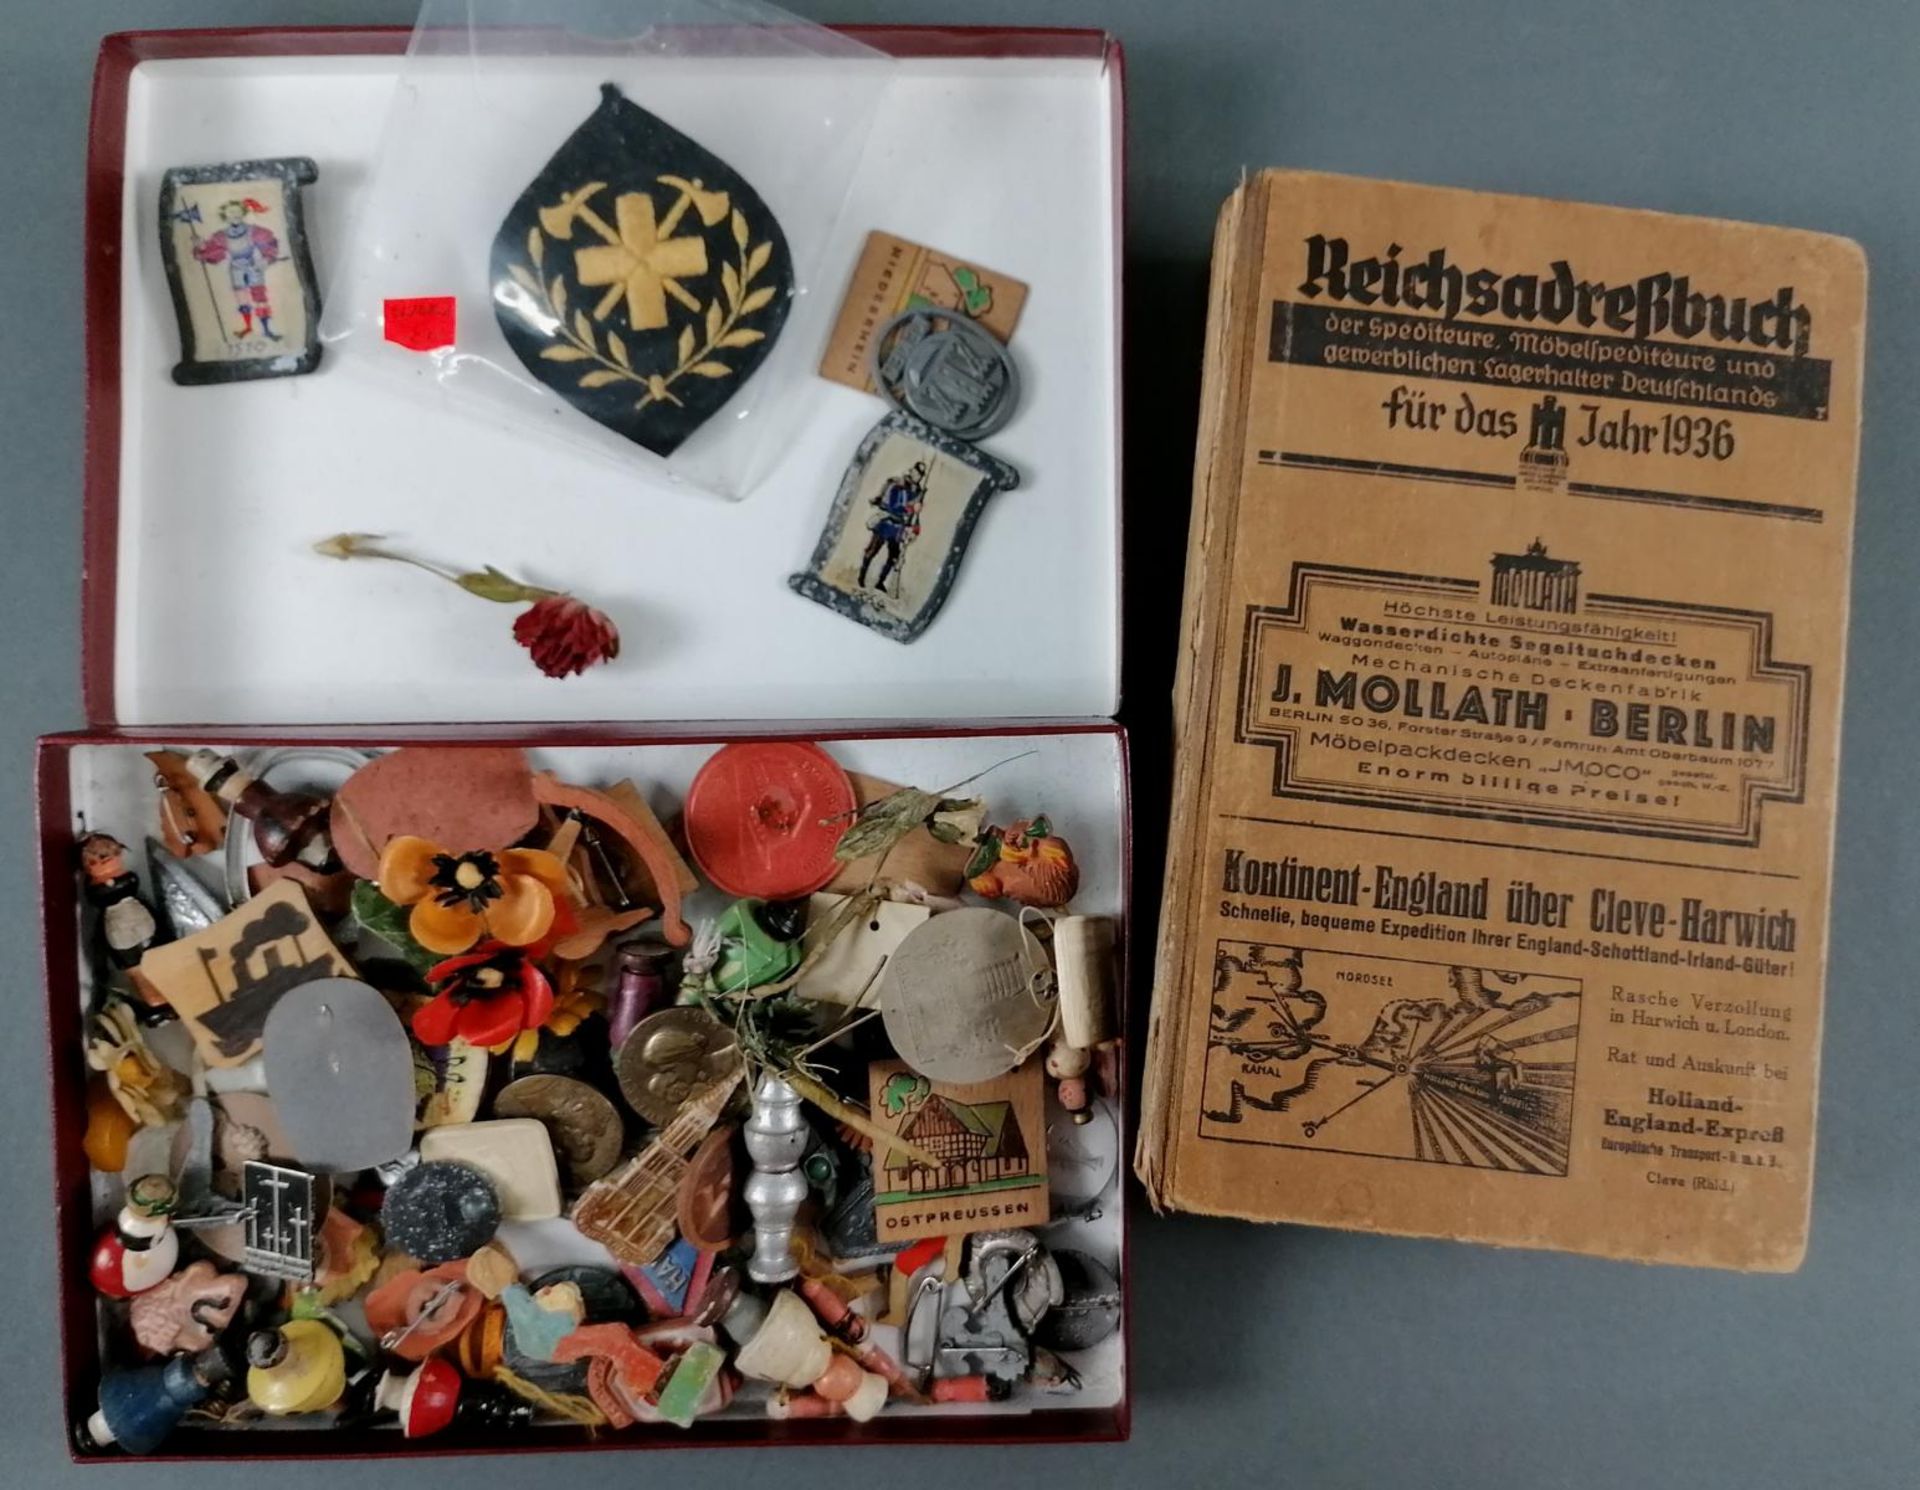 Reichsadressbuch von 1936 und Schachtel mit WHW Abzeichen